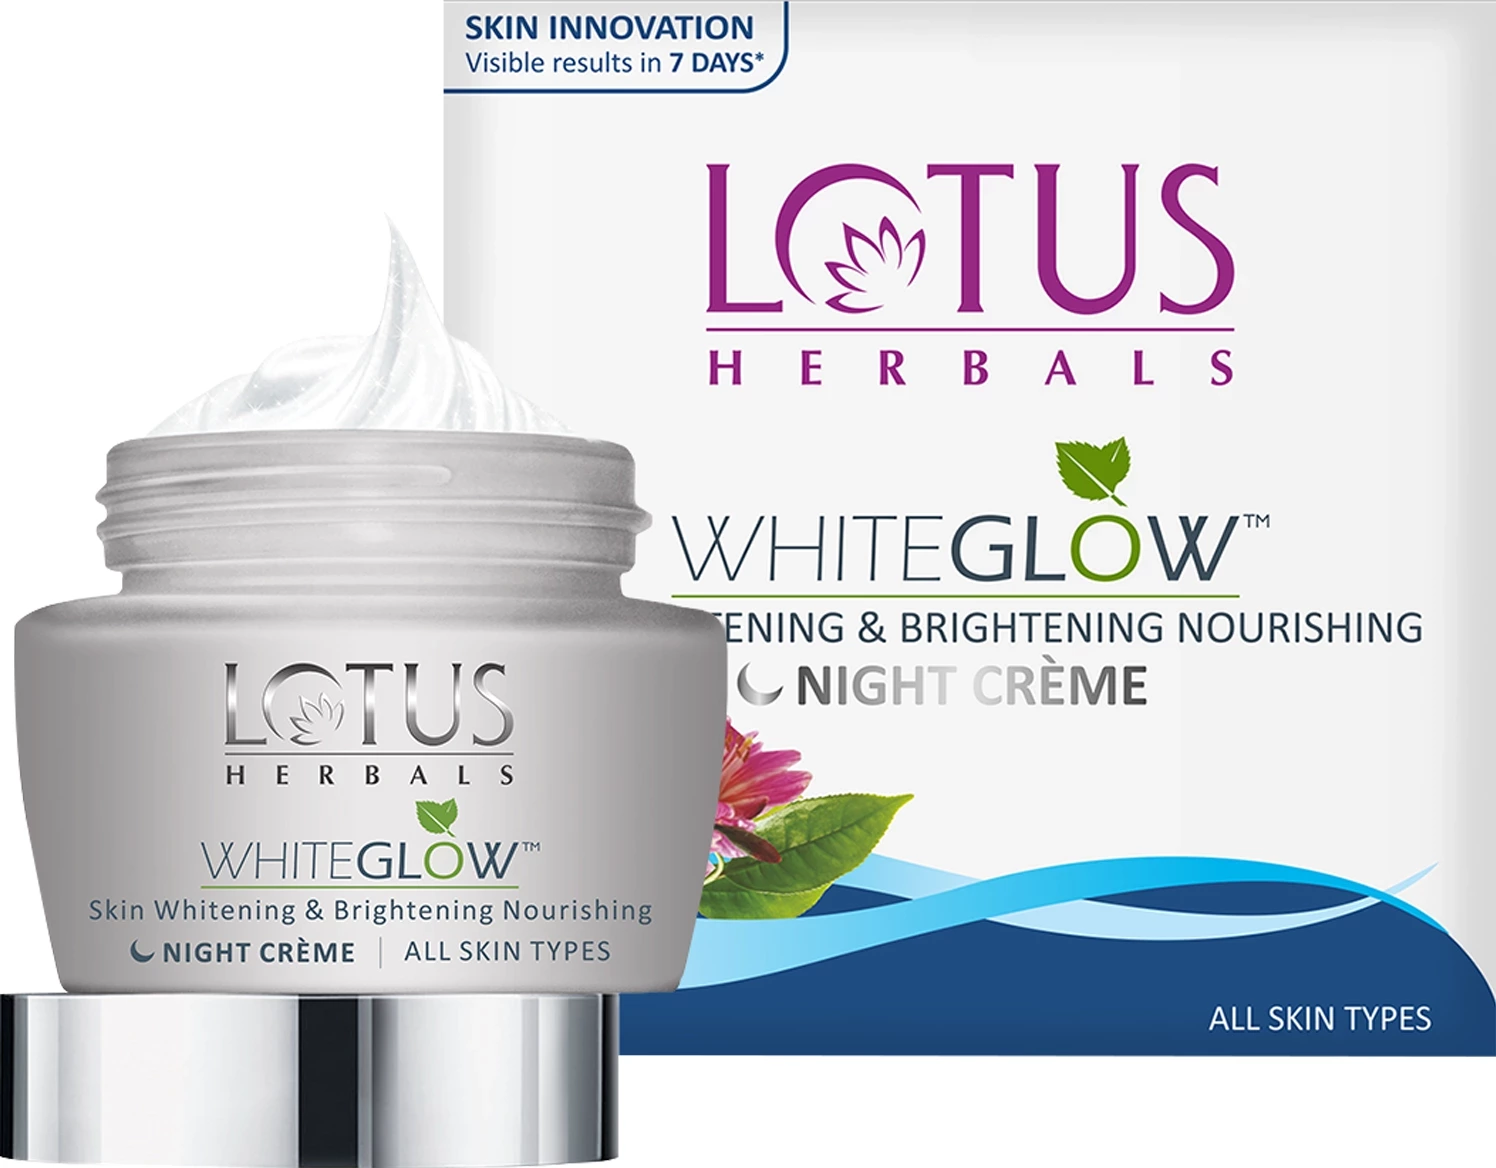 Lotus Herbals Whiteglow Whitening And Brightening Night Cream Review